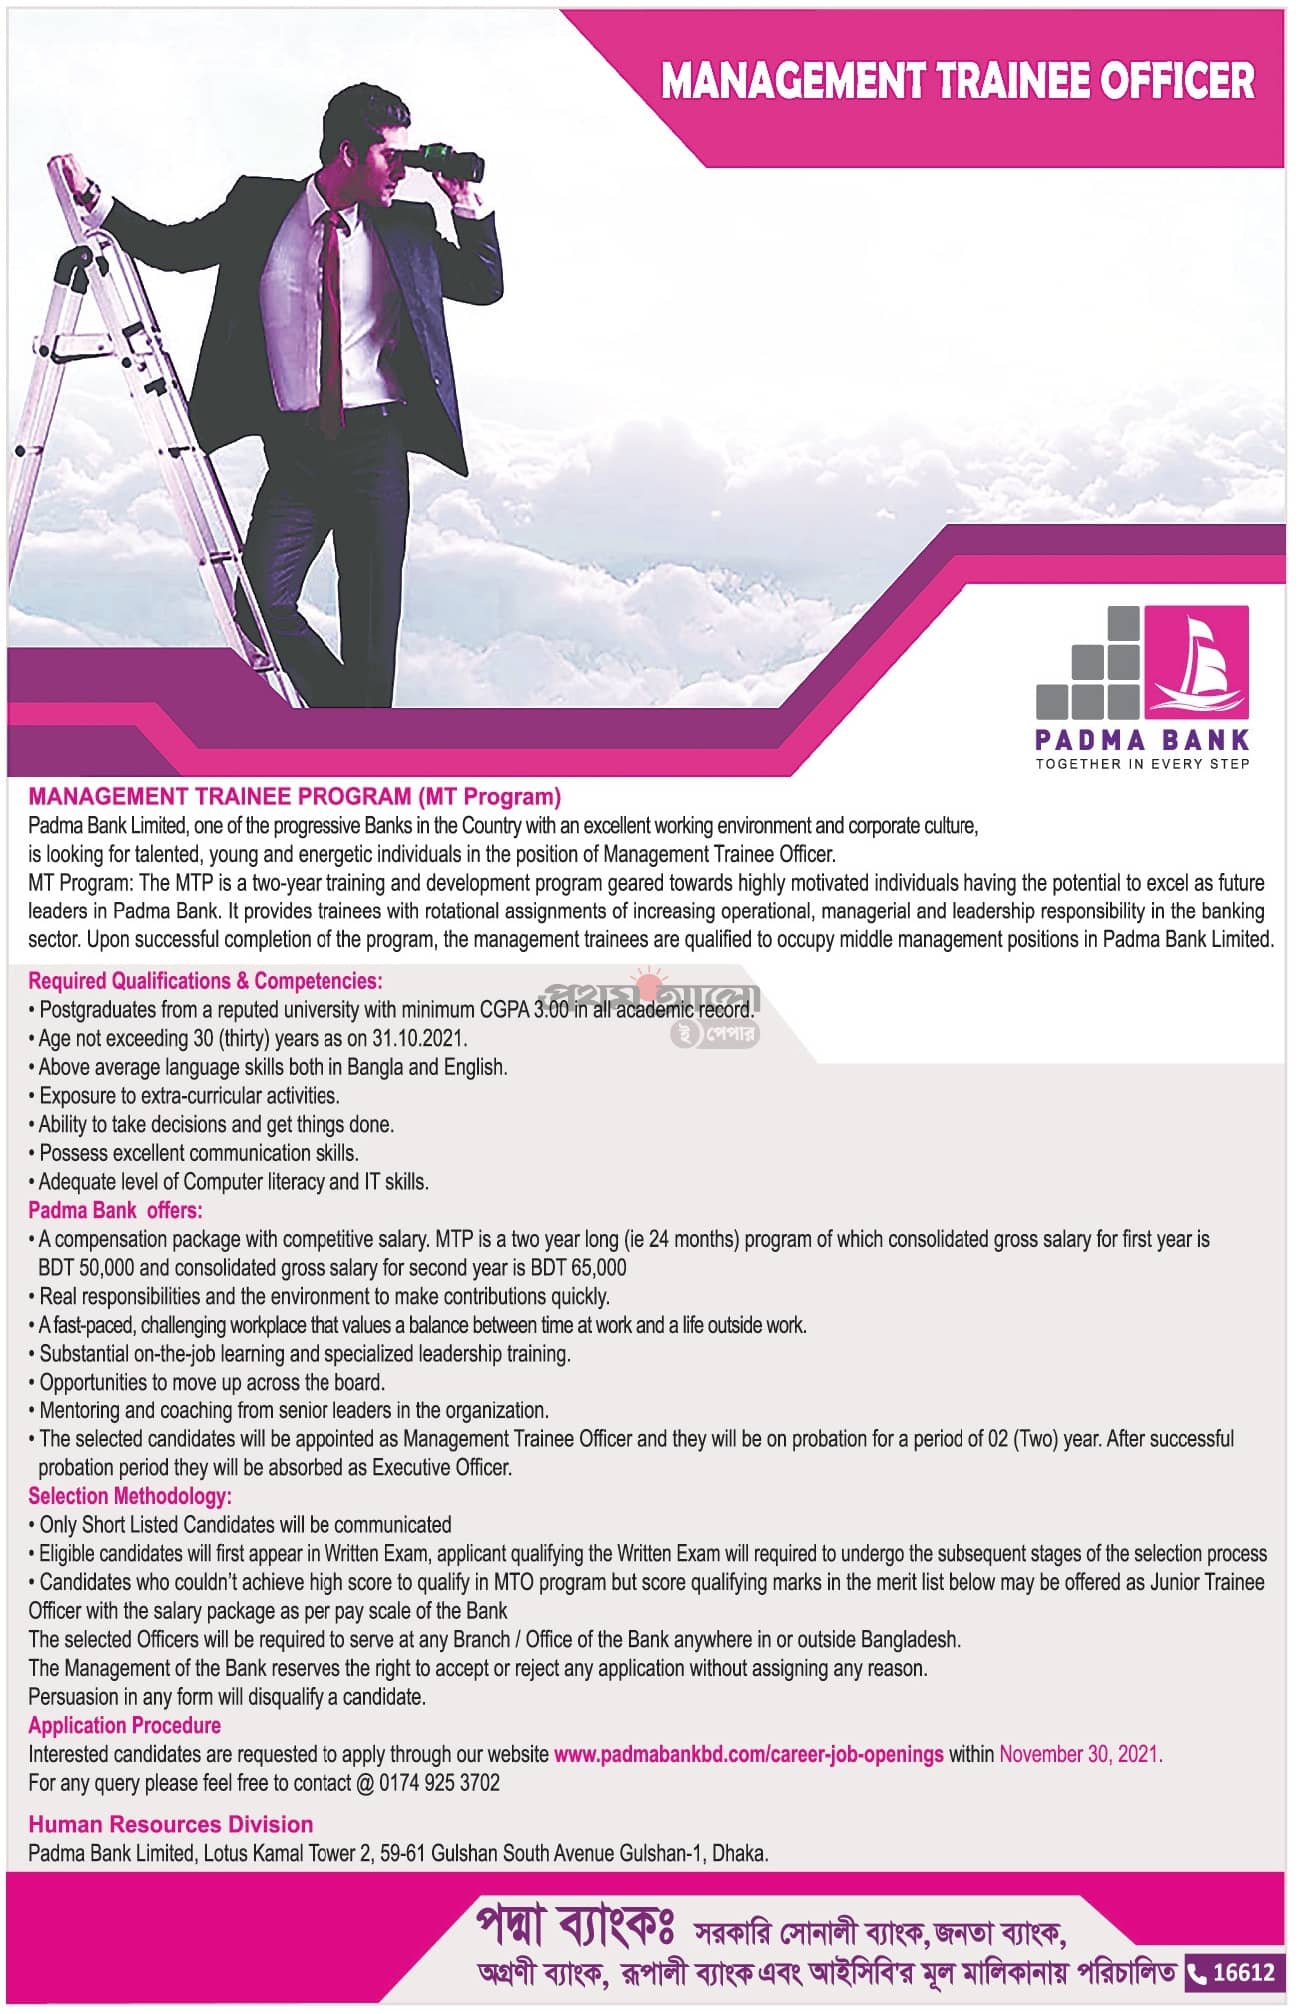 Padma Bank Limited Job Circular